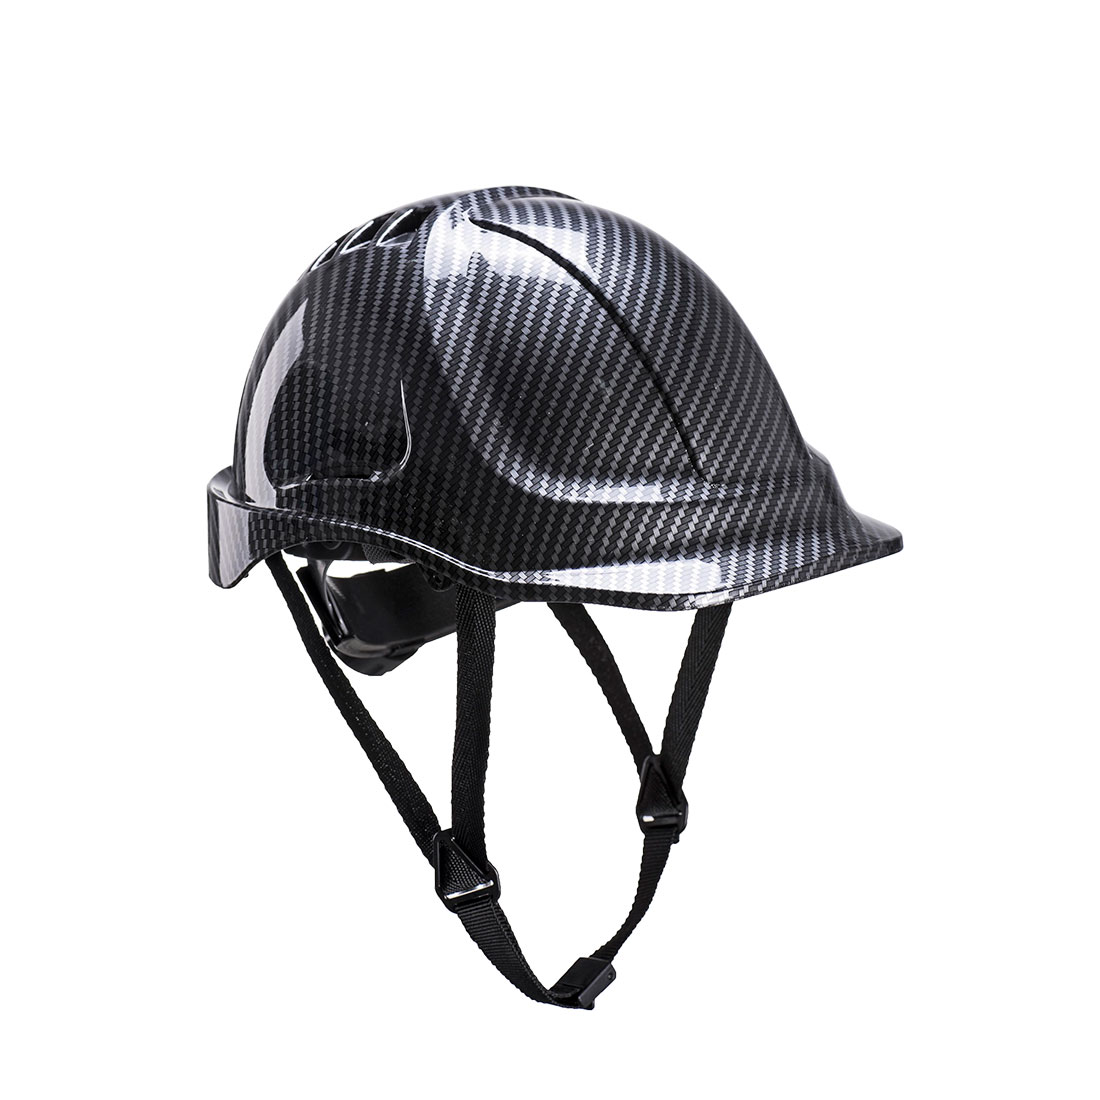 Endurance Helm mit Karbon-Look